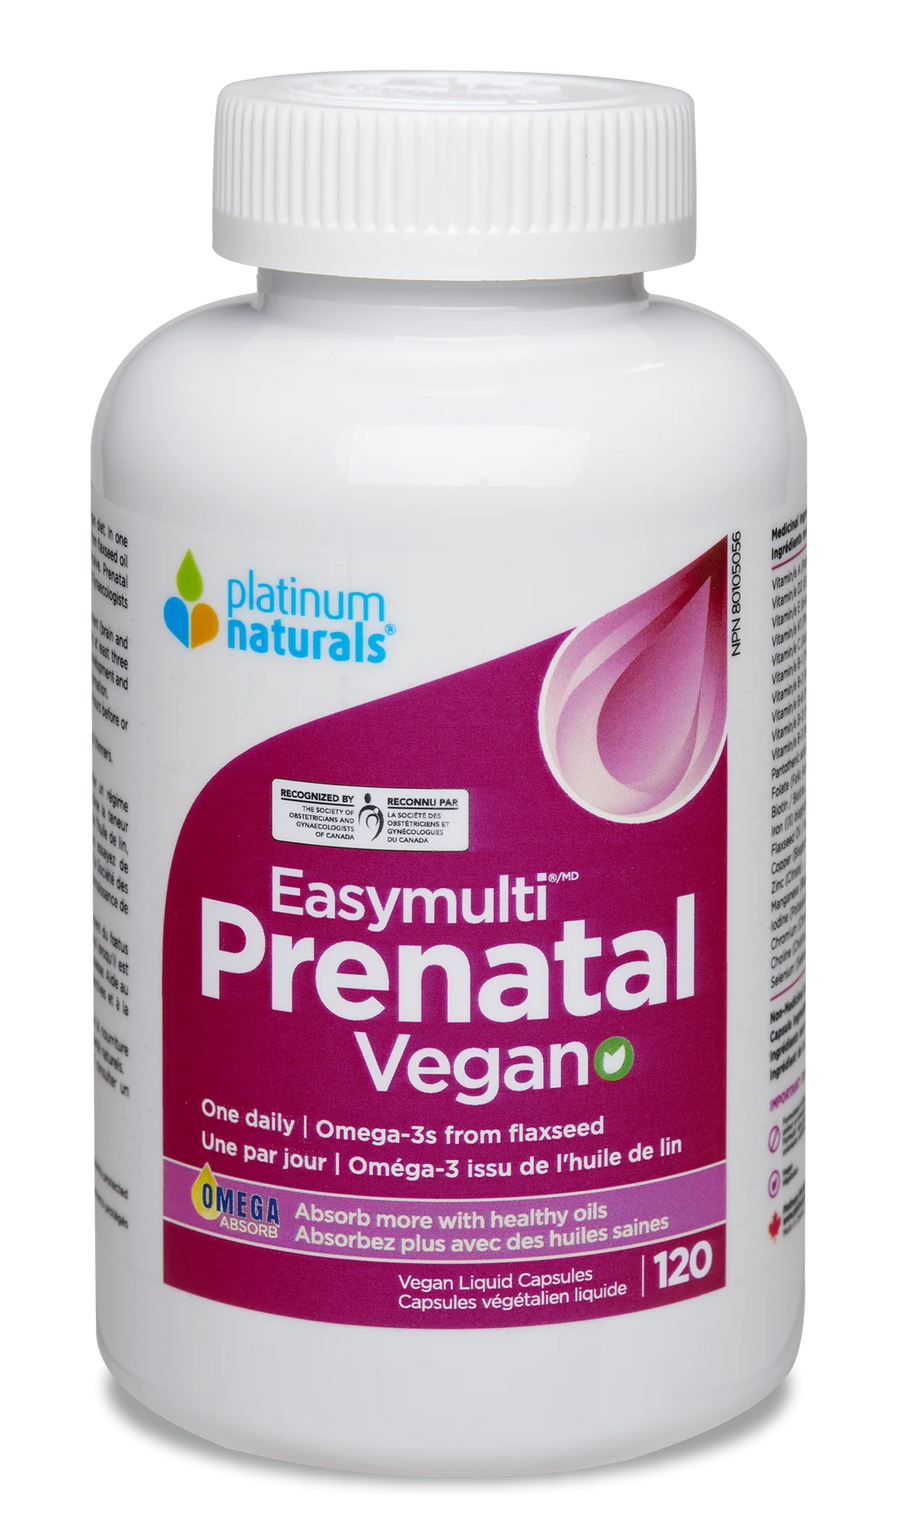 Platinum Naturals Prenatal Easymulti Vegan 120 Veg. Liquid Capsules